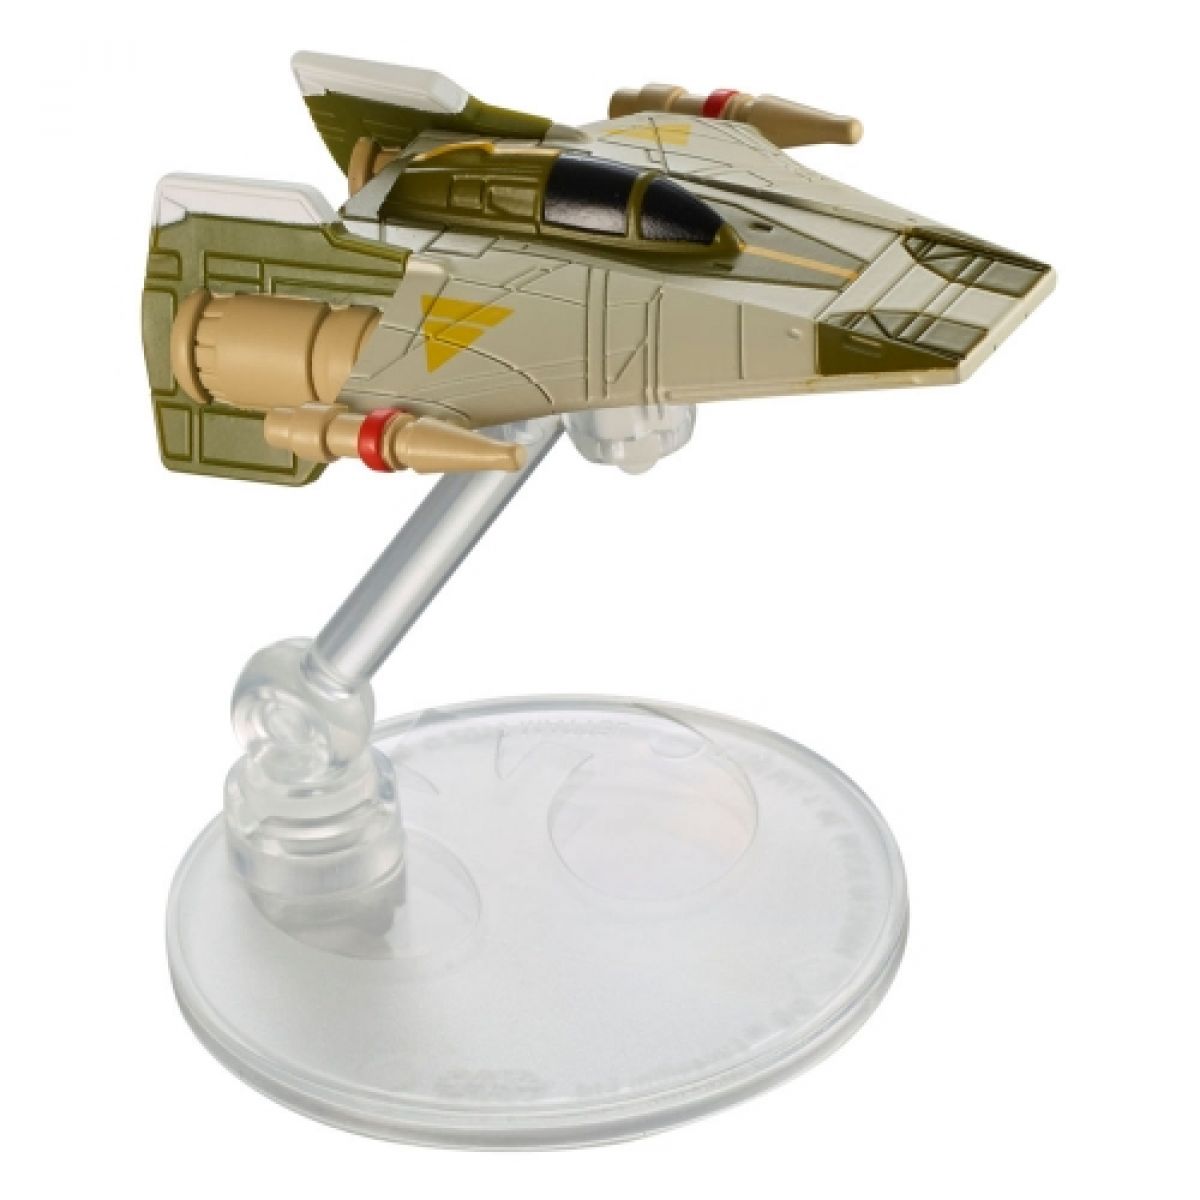 Hot Wheels Star Wars Starship 1ks - A-Wing Fighter DNP19